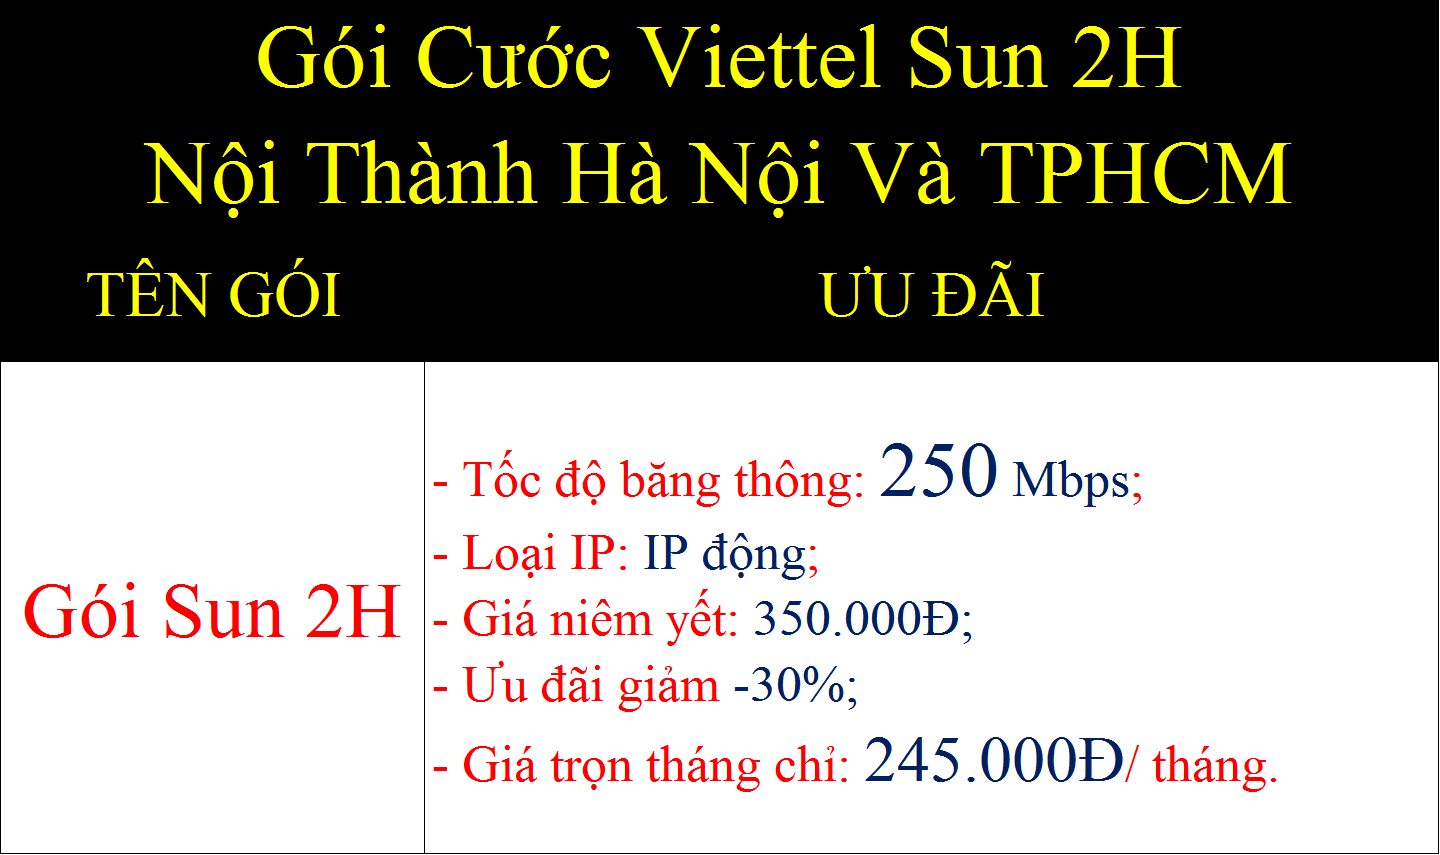 Gói cước Viettel Sun 2H nội thành Hà Nội và TPHCM